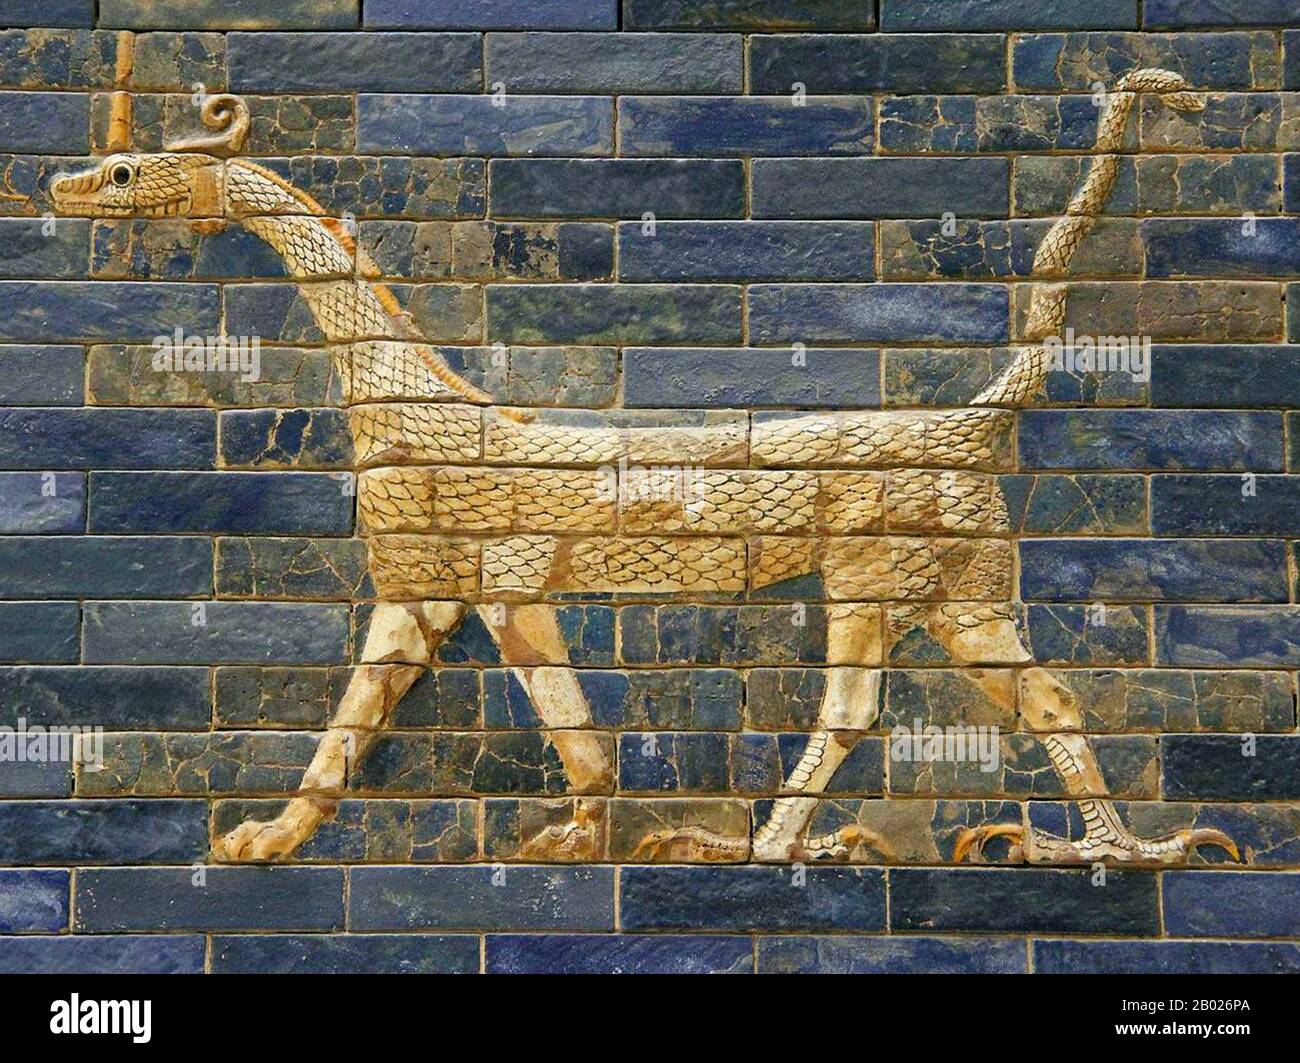 La porta di Ishtar (persiano: دروازه ایشتار‎) (arabo: بوابة عشتار‎) era l'ottava porta della città interna di Babilonia. Fu costruito nel 575 a.C. circa per ordine del re Nebuchadnezzar II sul lato nord della città. Dedicata alla dea babilonese Ishtar, la porta fu costruita utilizzando mattoni vetrati con file alternate di bassorilievo mušḫuššu (draghi) e aurochi. Il tetto e le porte della porta erano di cedro, secondo la targa di dedicazione. Attraverso il cancello correva la via Processionale, che era fiancheggiata da pareti coperte di leoni su mattoni smaltati (circa 120 di loro). Ishtar porta ha solo Foto Stock